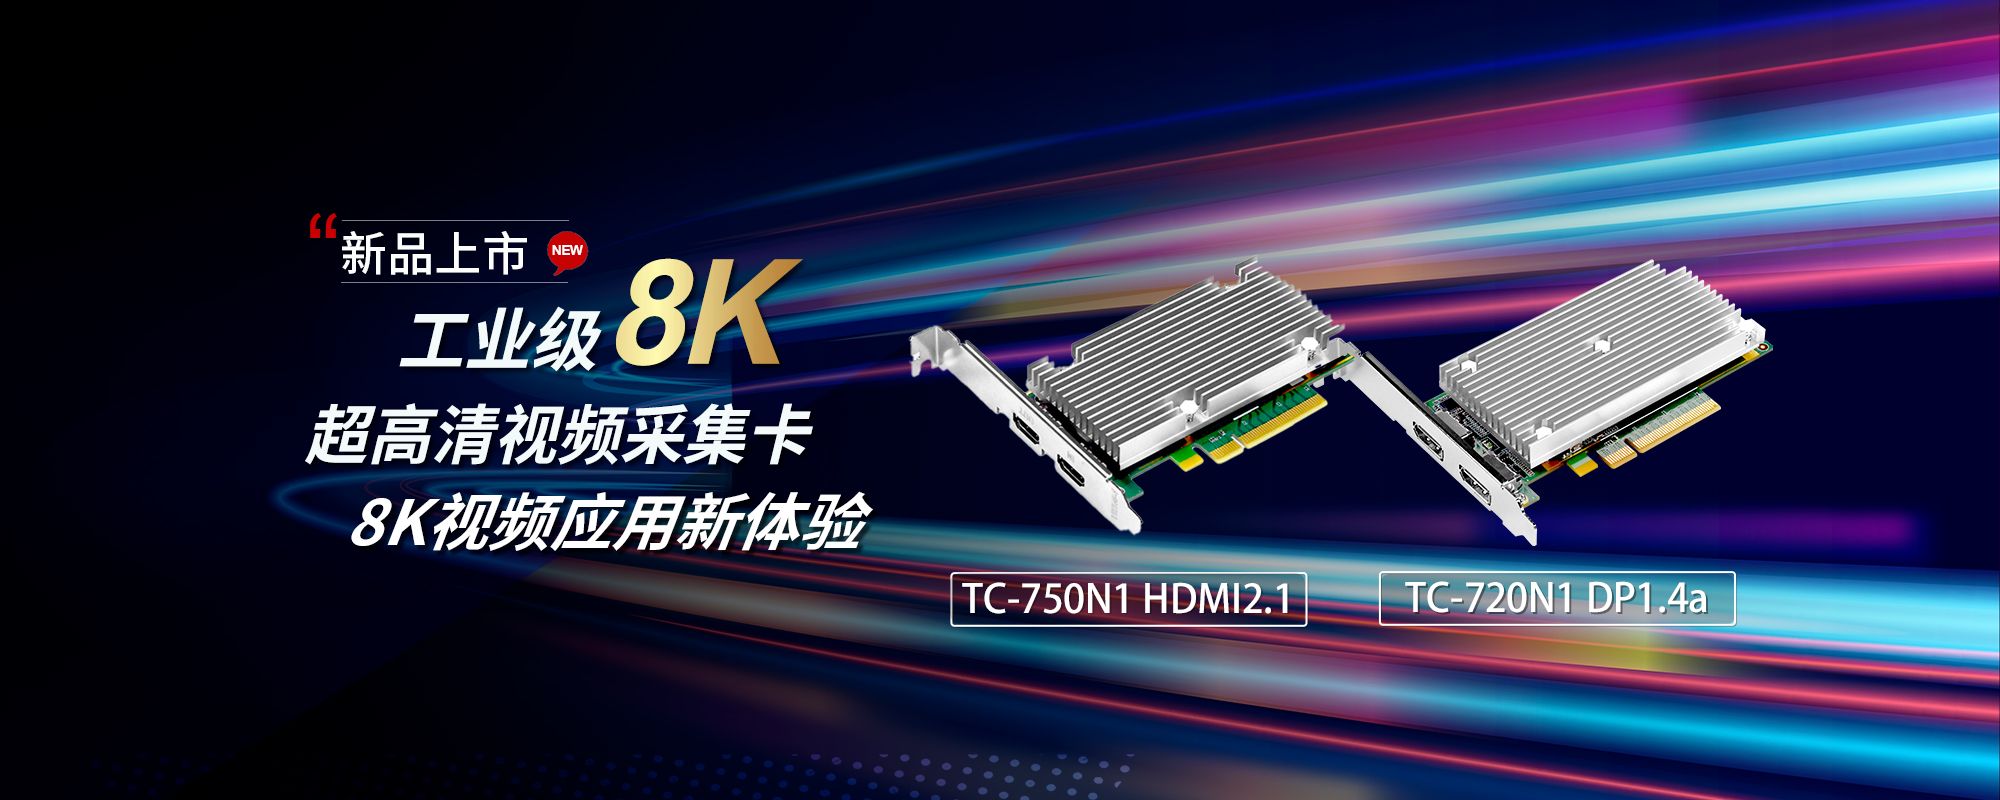 天创恒达工业级8K超高清采集卡TC-750N1 HDMI2.1、TC-720N1 DP1.4a 上市！